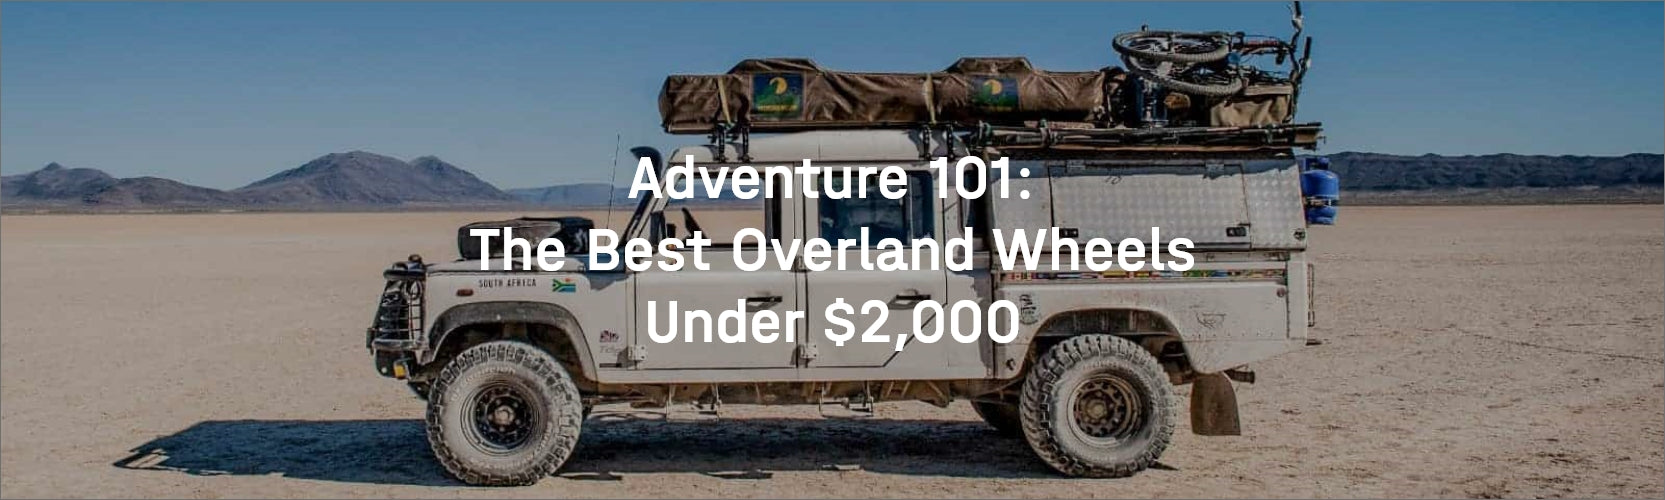 Adventure 101: The Best Overland Wheels Under $2,000